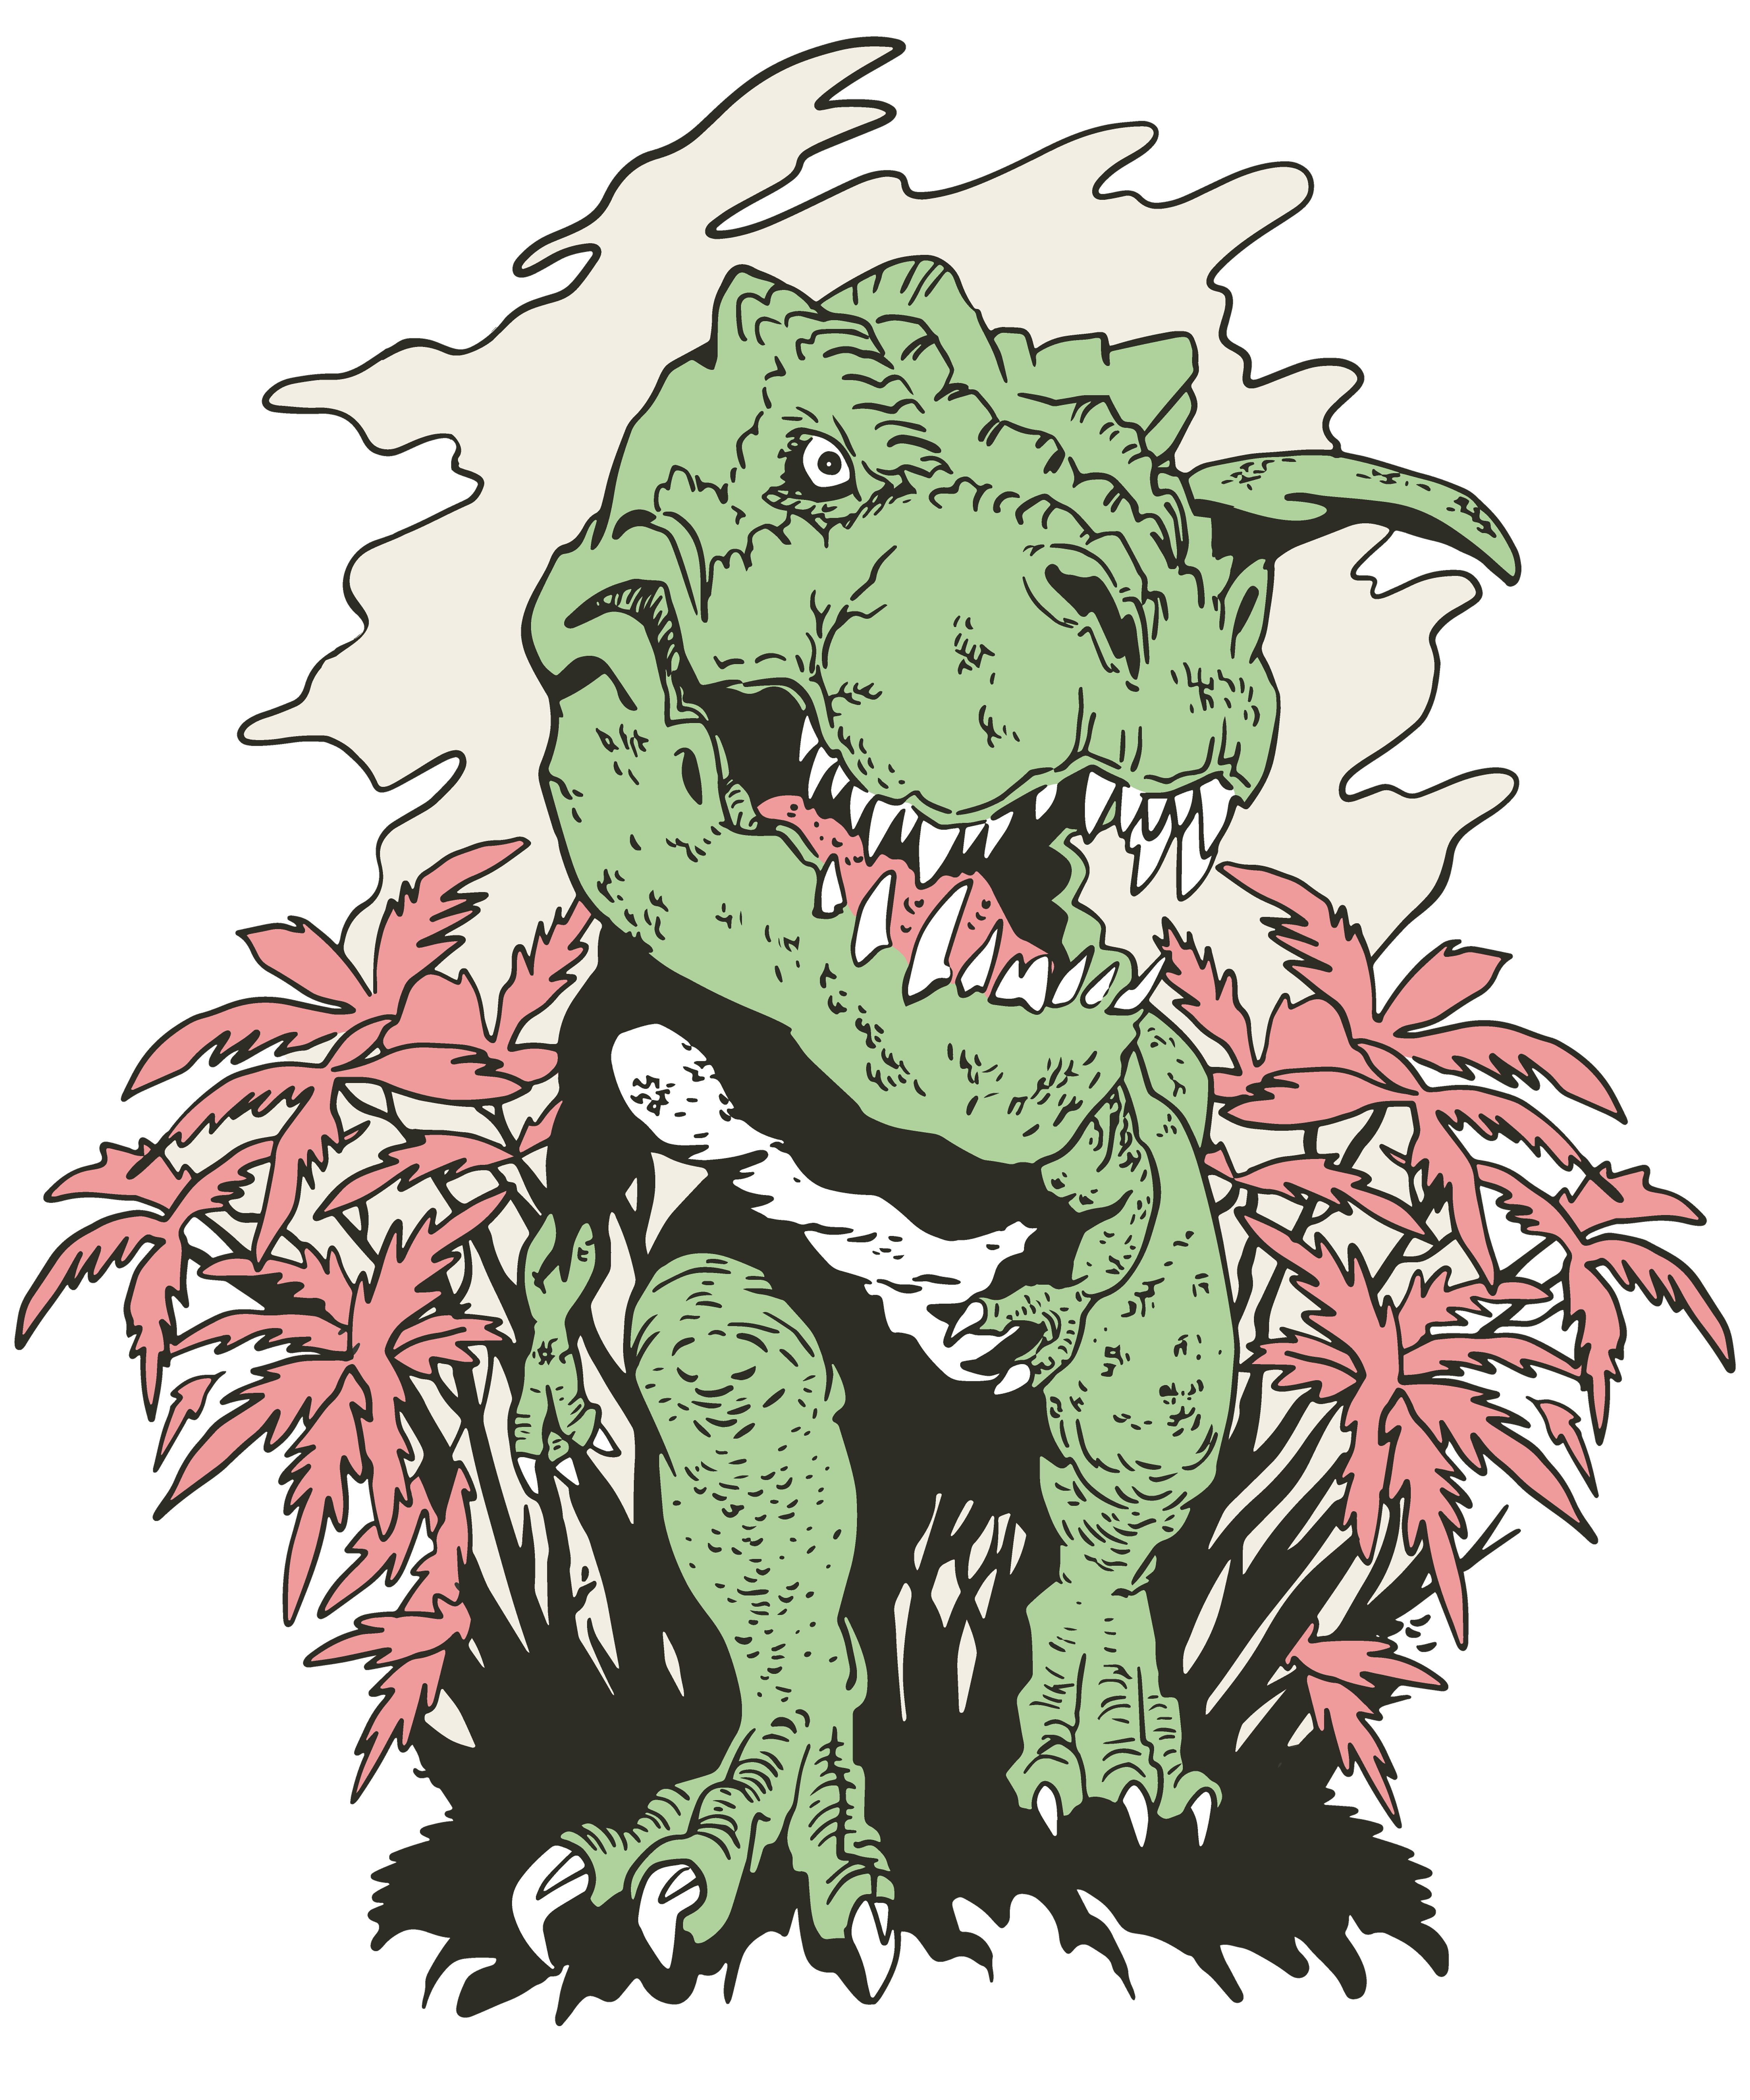 weiß, aus T-Shirt Aufdruck, Busch rot, mit einem i101 MyDesign24 bedrucktes Baumwolle blau, kommt der T-Rex Dino Kinder 100% schwarz, Print-Shirt